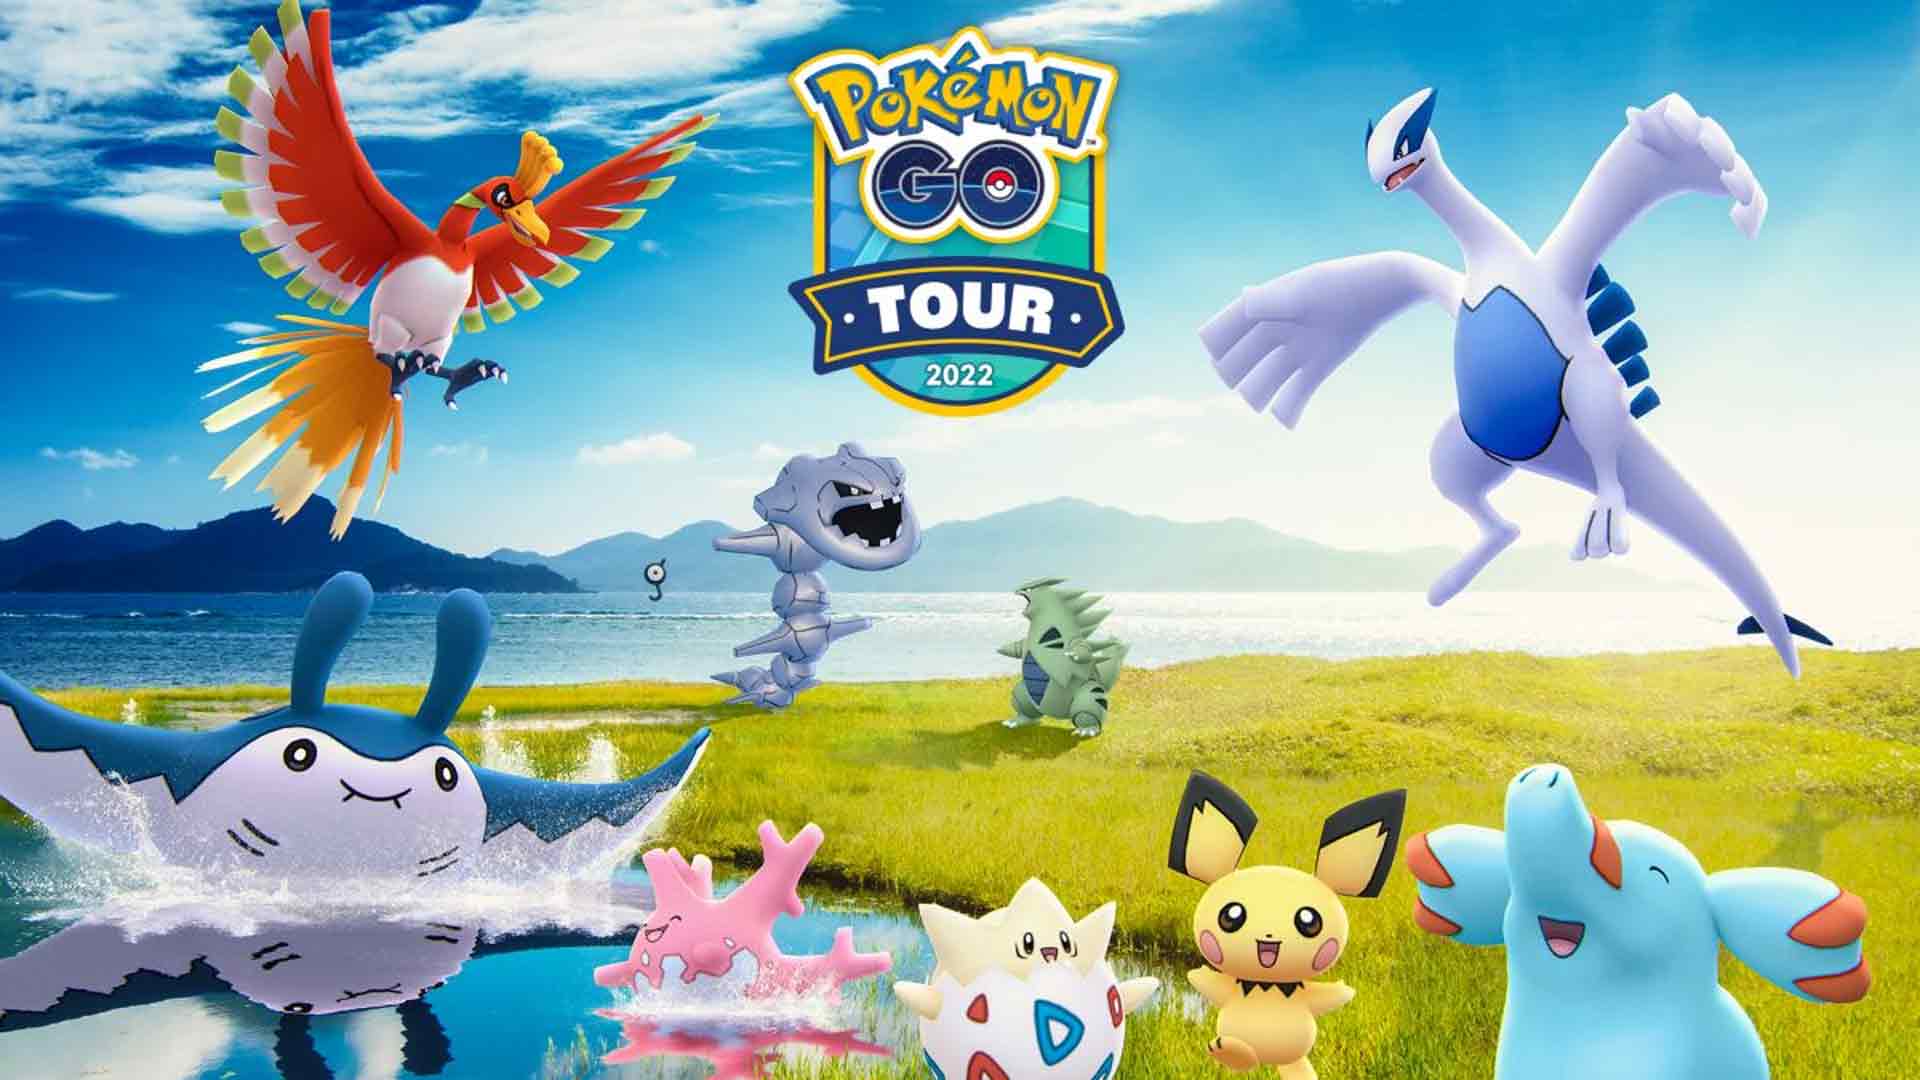 Pokemon Go Tour: Johto 2022 Day 1 game